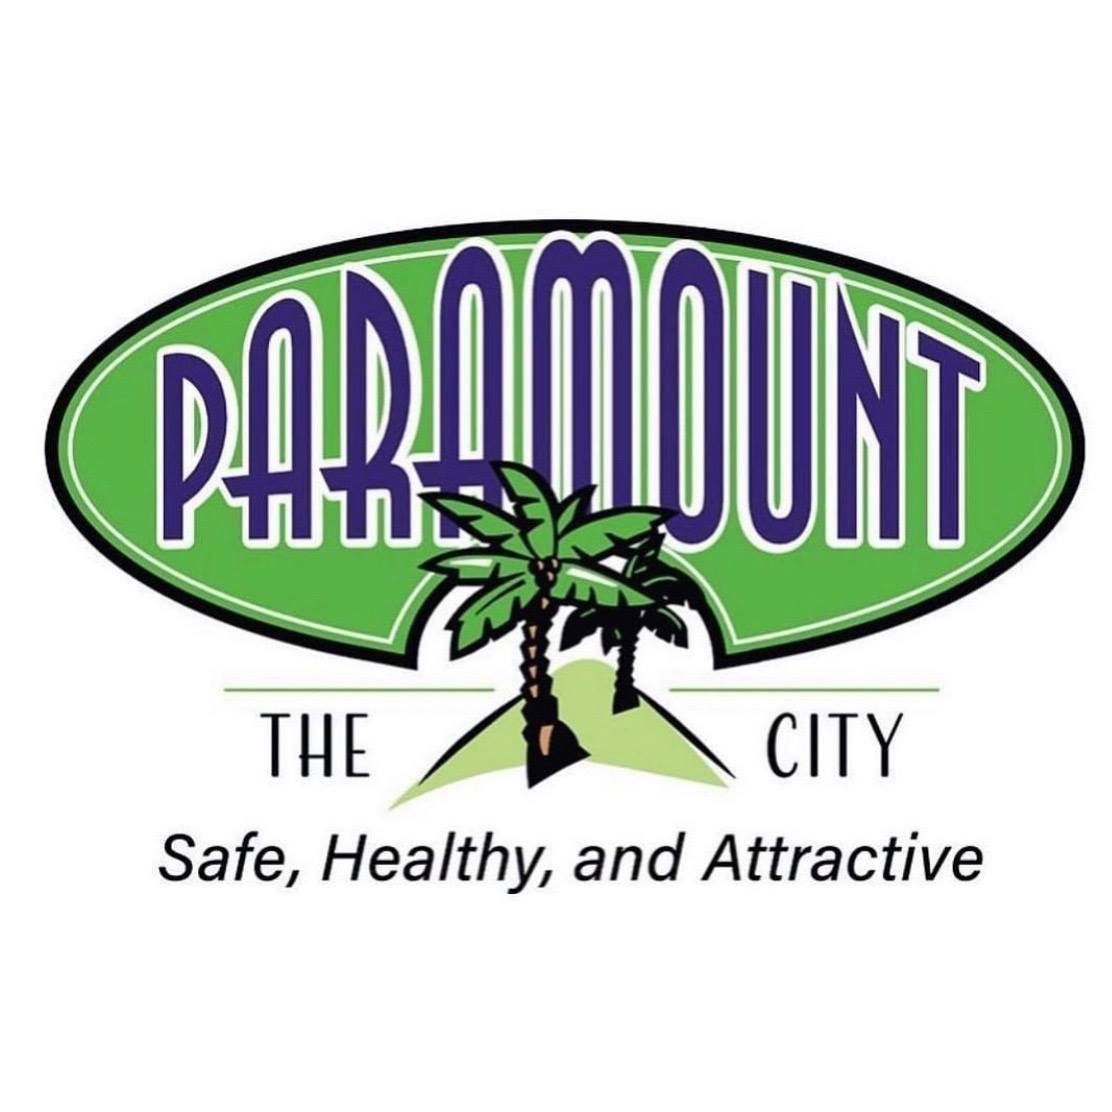 Paramount City logo